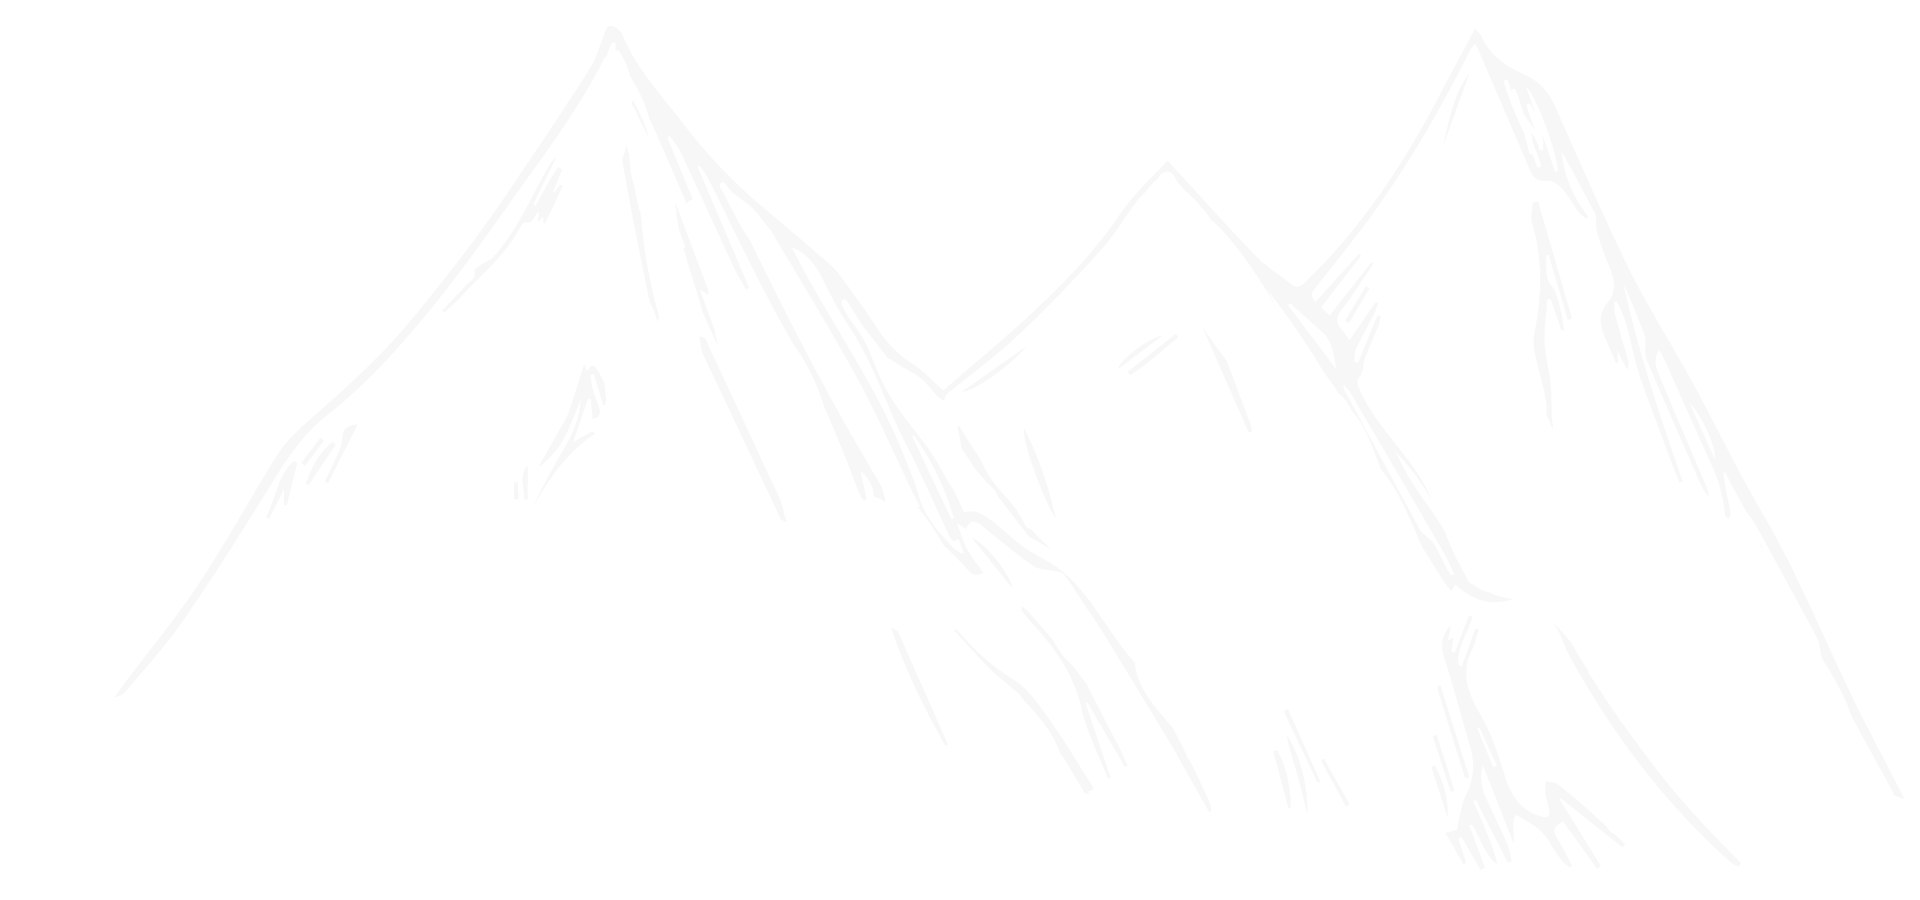 agentur joerdens mountains